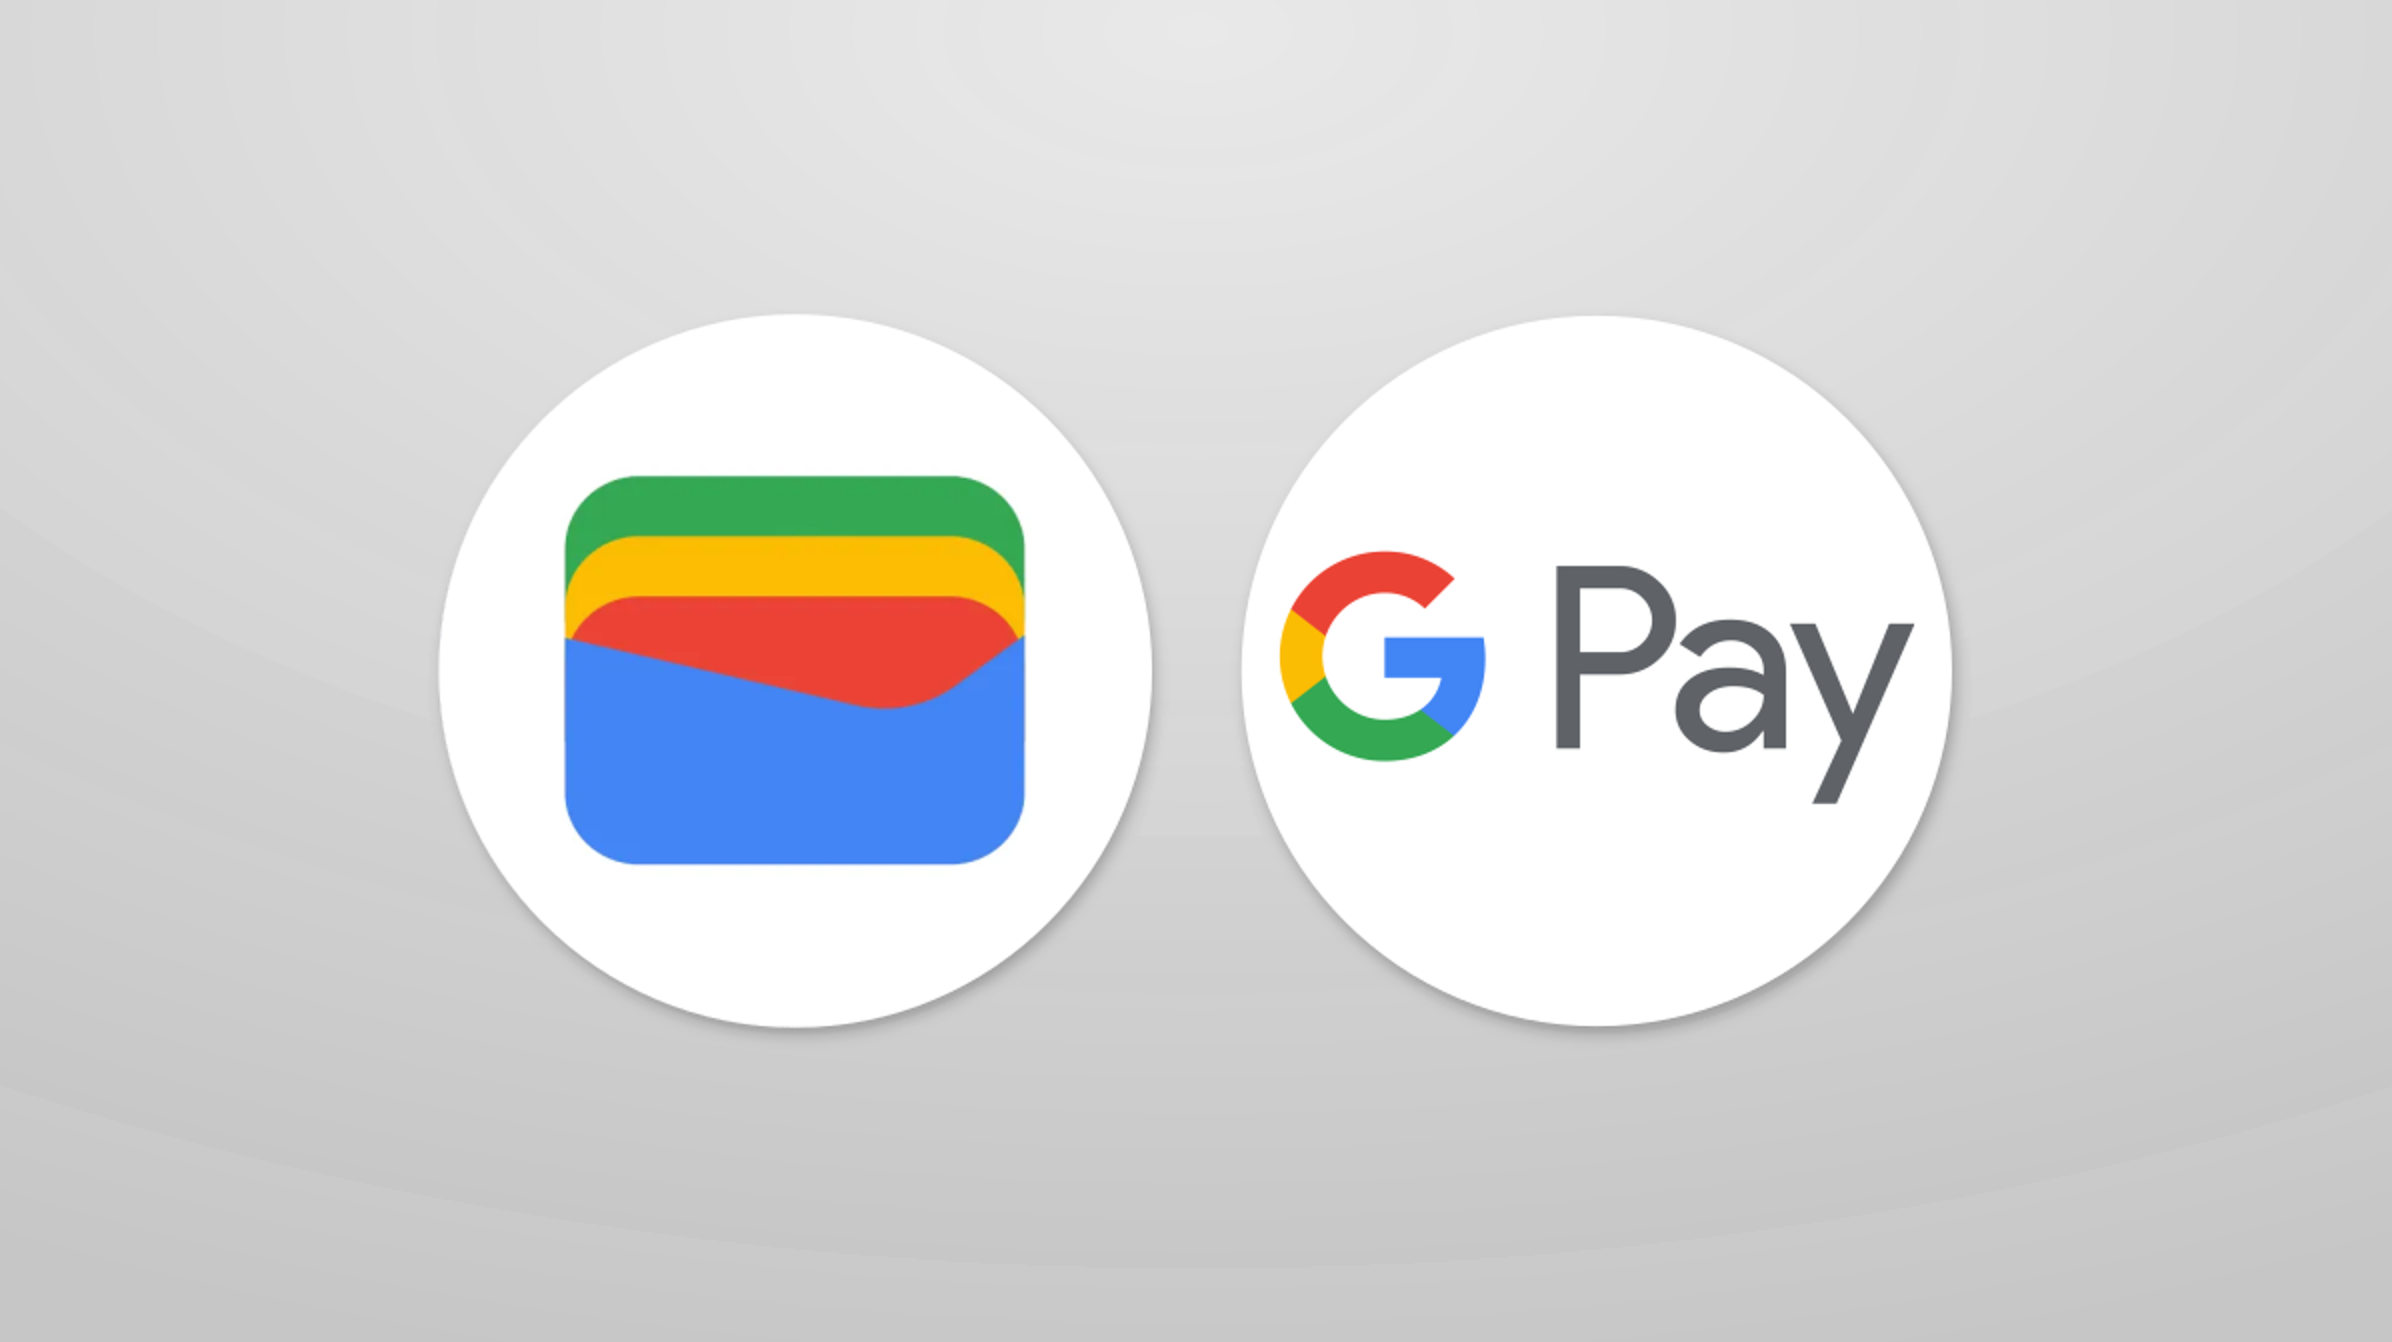 Google випадково роздала звичайним користувачам Google Pay до $1000, які не потрібно повертати